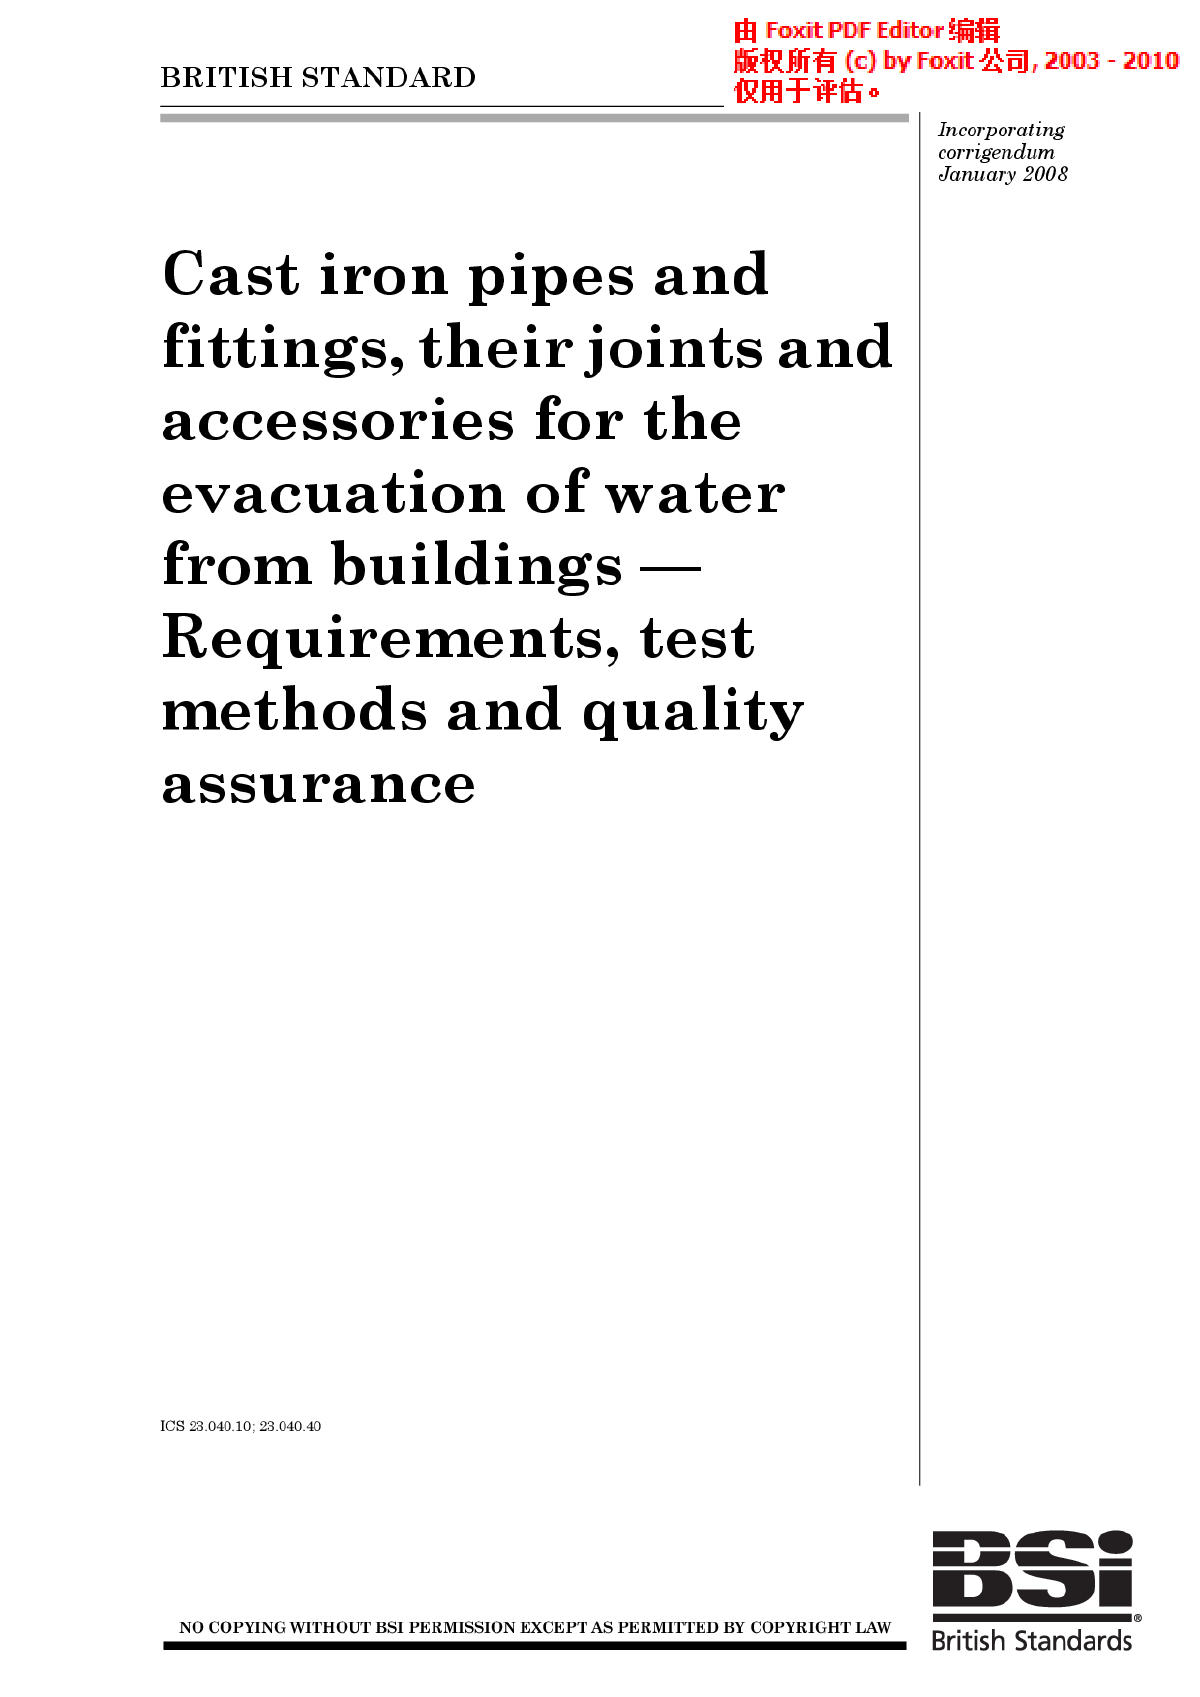  建筑物排水用铸铁管和配件及其接头和附件.要求、试验方法和质量保证-图一